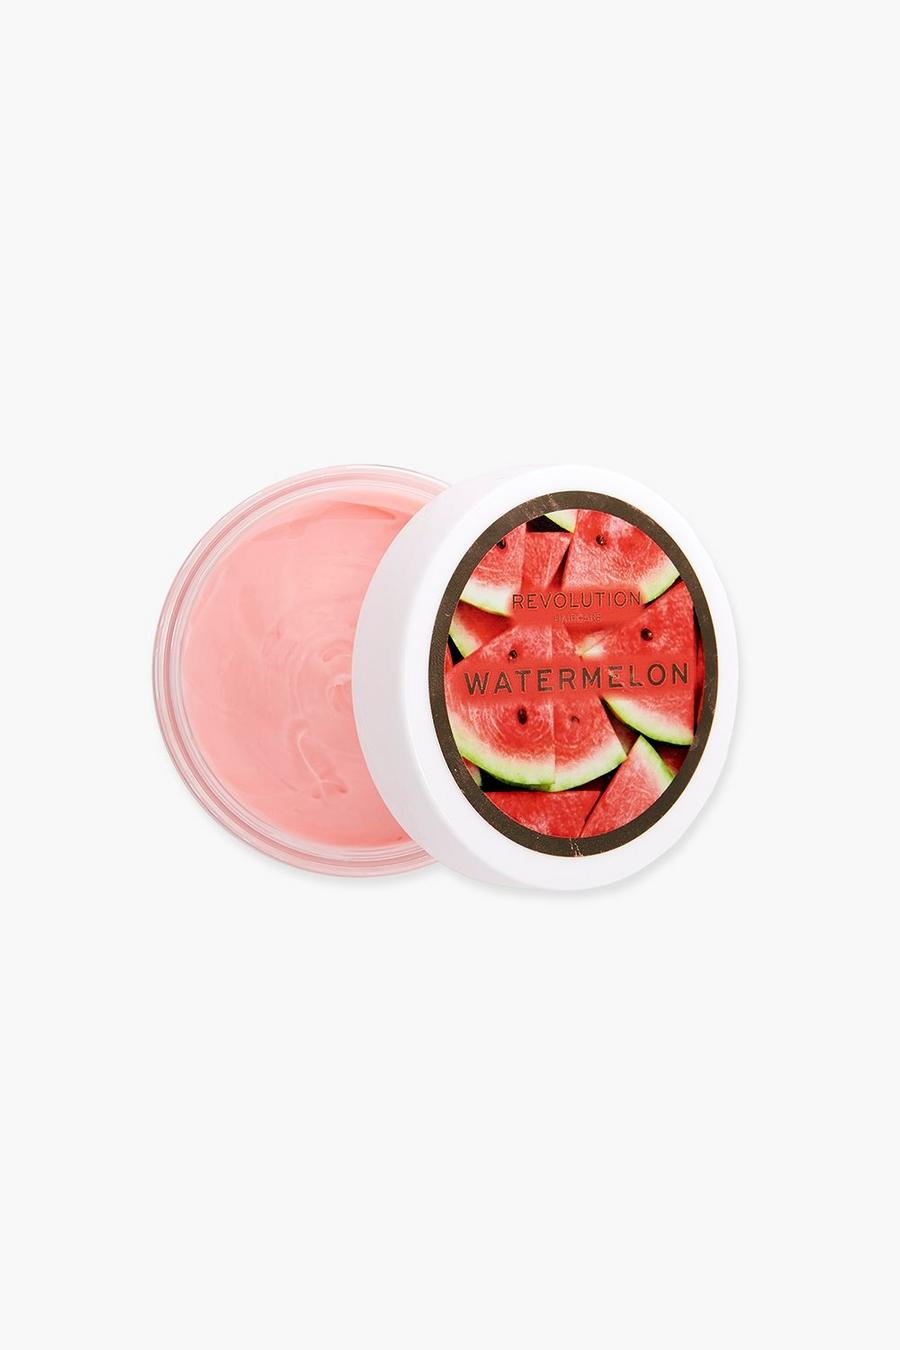 Revolution Hair hydratisierende Wassermelonen-Maske, Pink rose